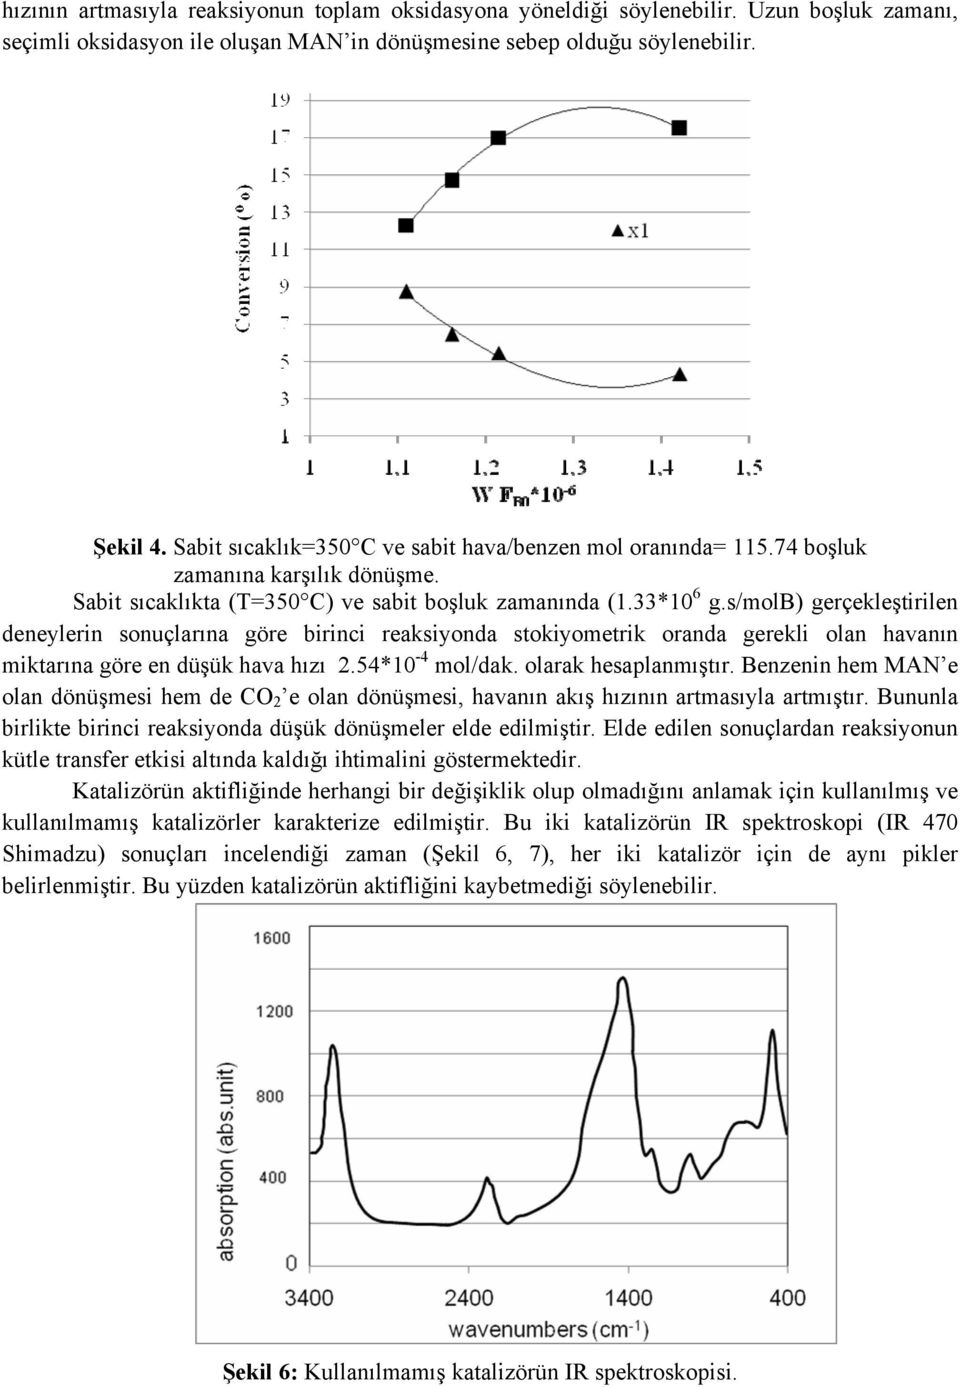 s/molb) gerçekleştirilen deneylerin sonuçlarına göre birinci reaksiyonda stokiyometrik oranda gerekli olan havanın miktarına göre en düşük hava hızı.54*10-4 mol/dak. olarak hesaplanmıştır.